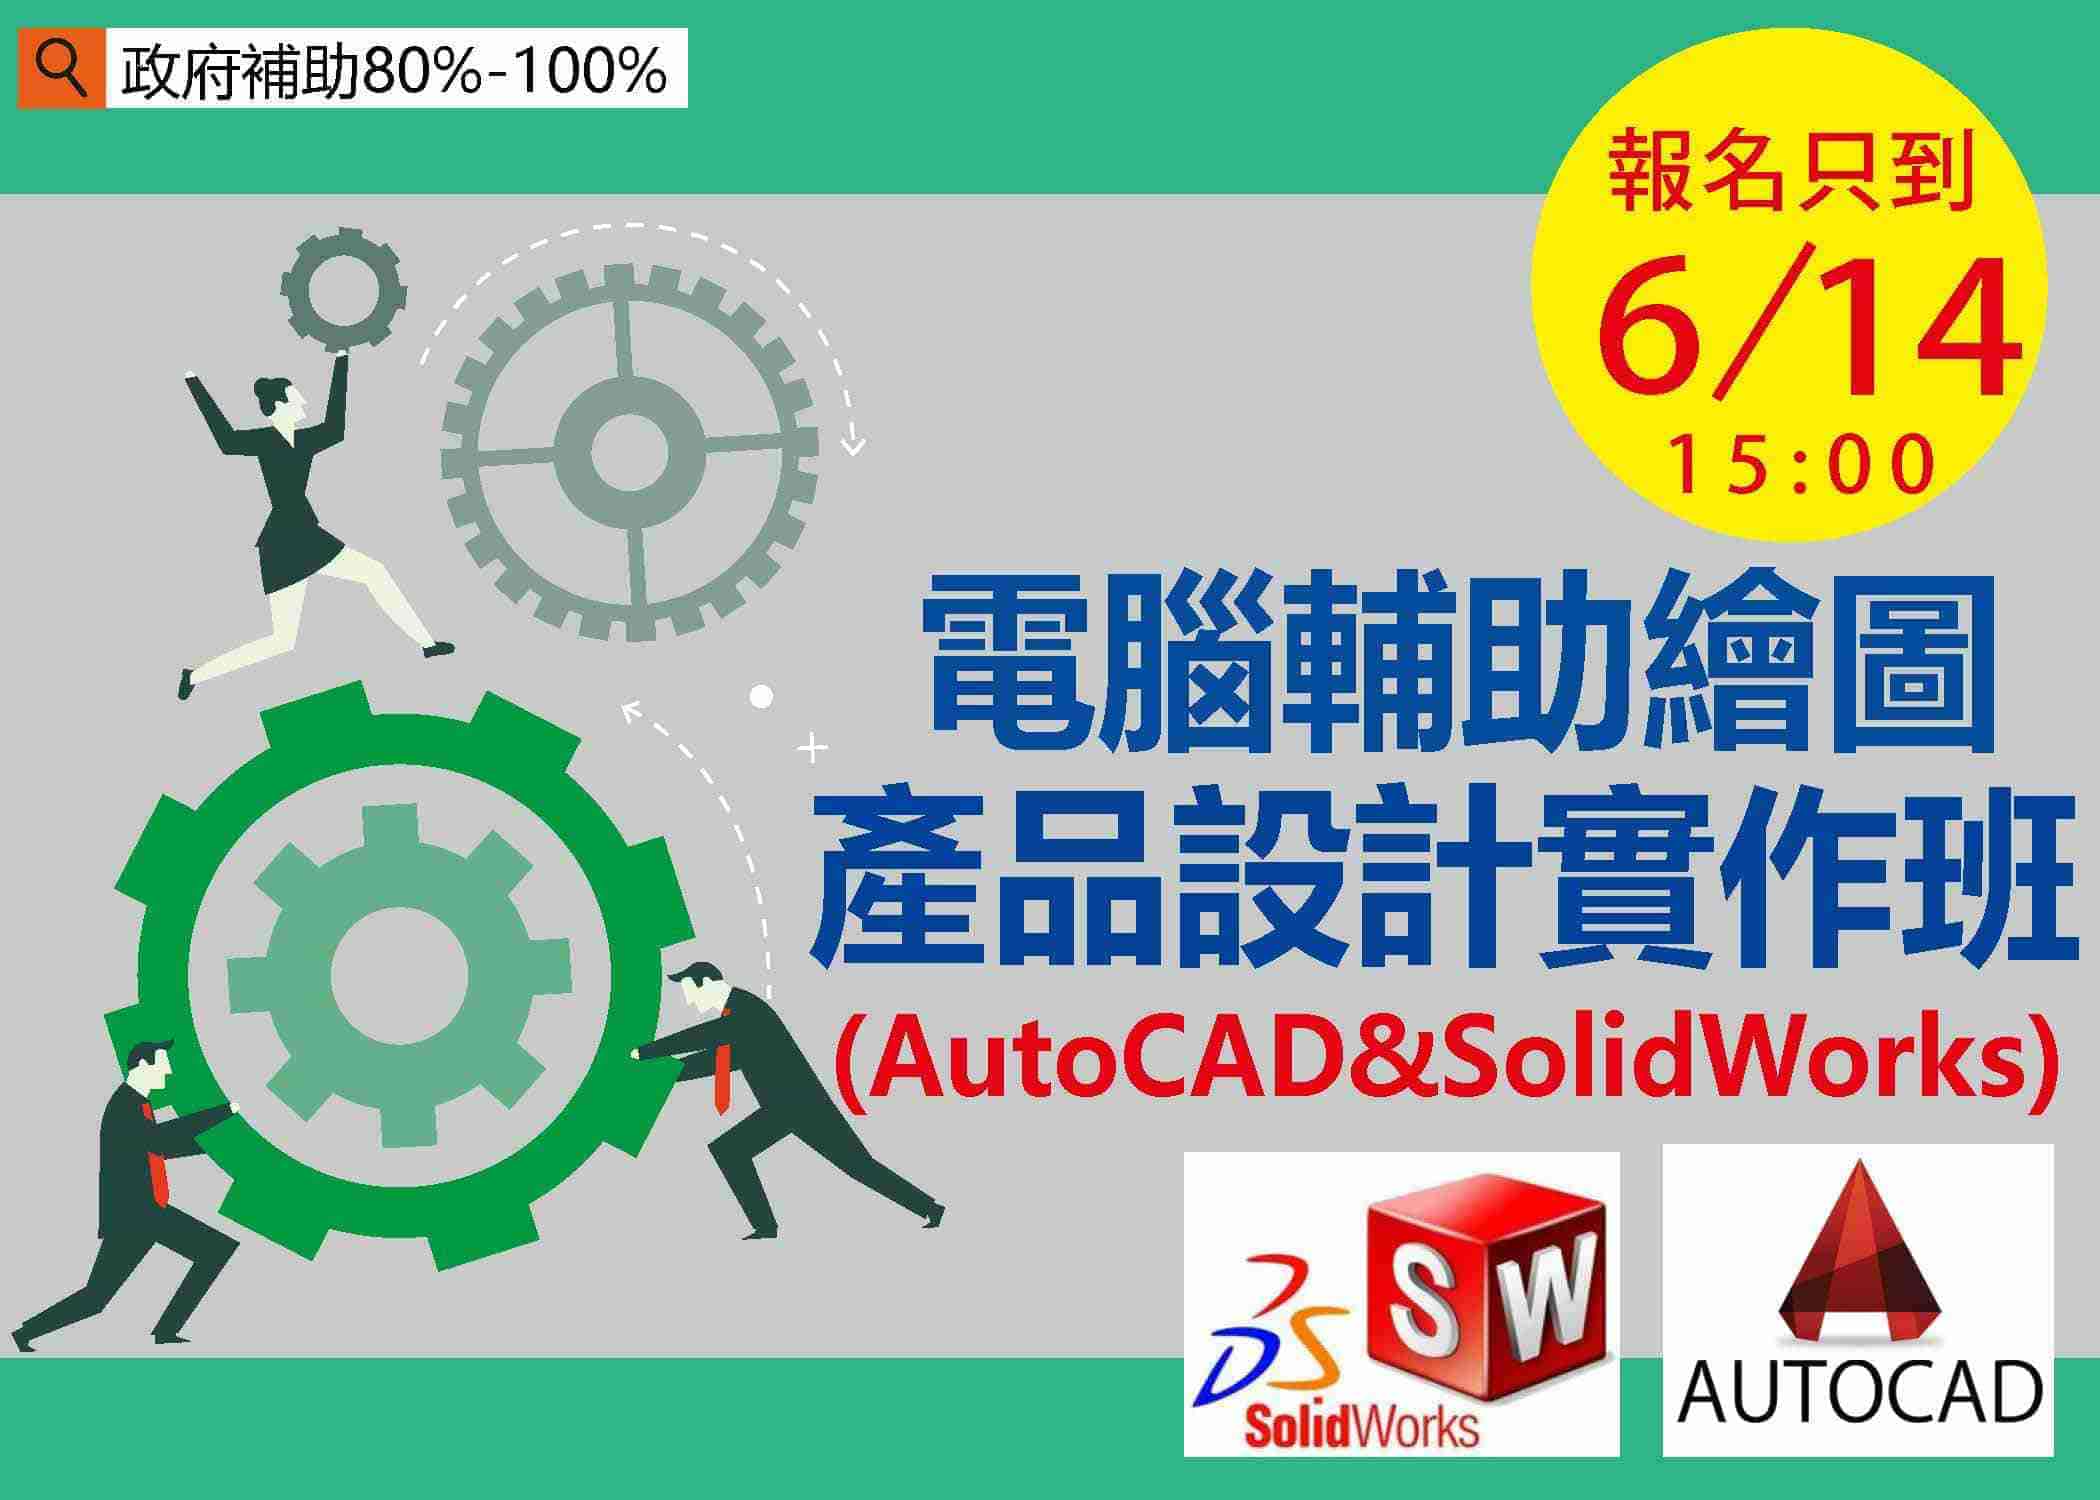 【免費就業輔導班】電腦輔助繪圖產品設計實作班 (AutoCAD&SolidWorks)